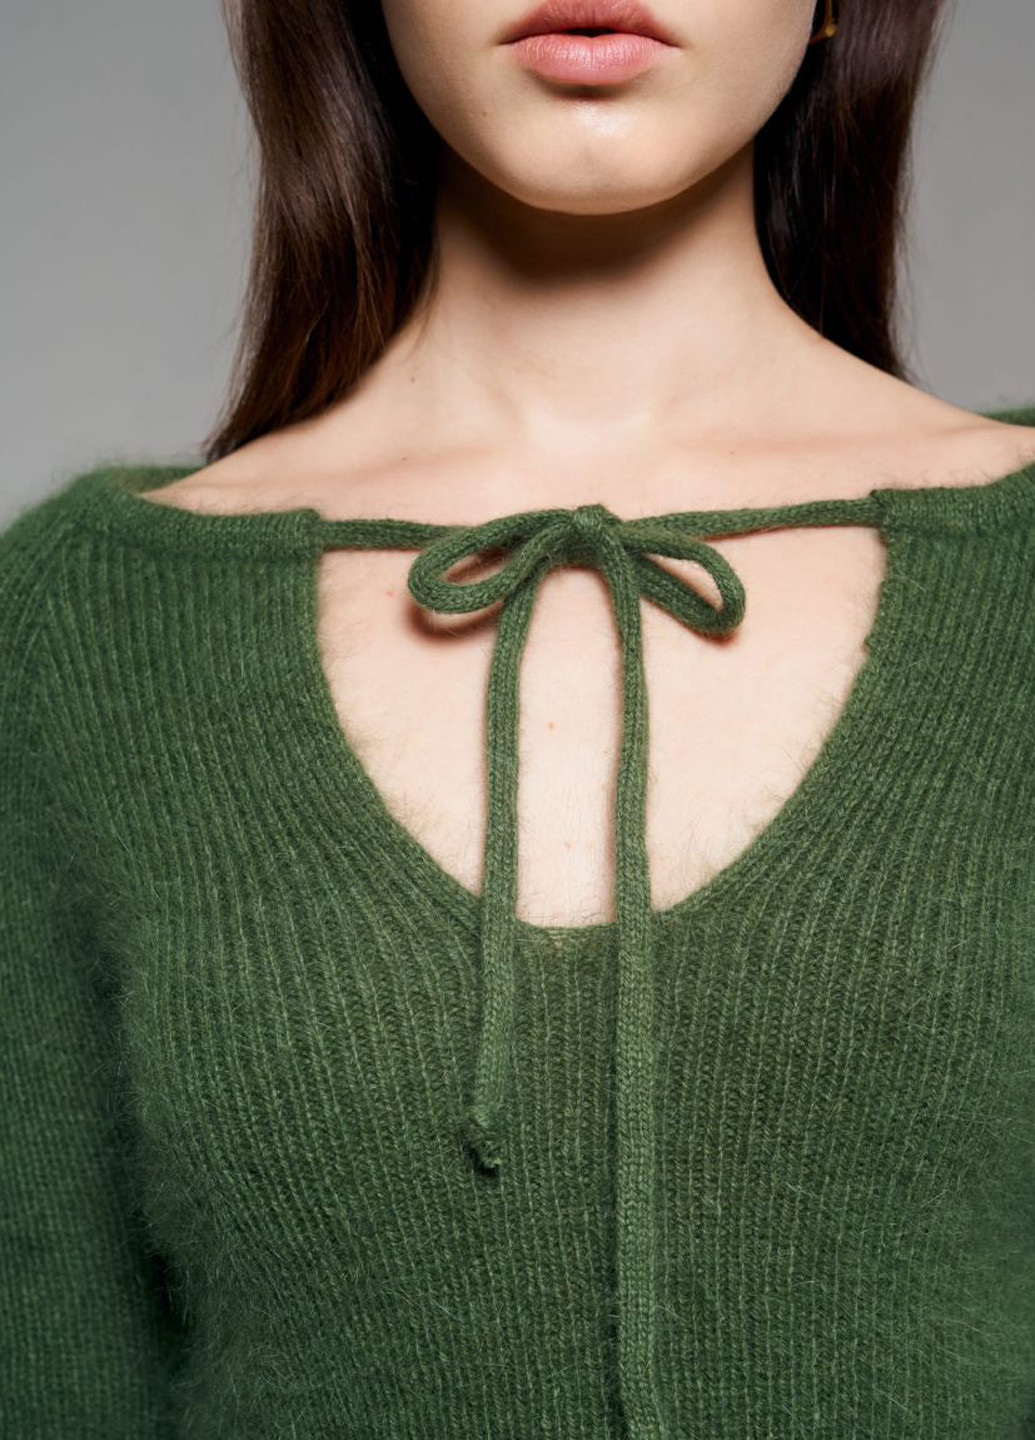 Зеленый демисезонный пуловер пуловер JUL